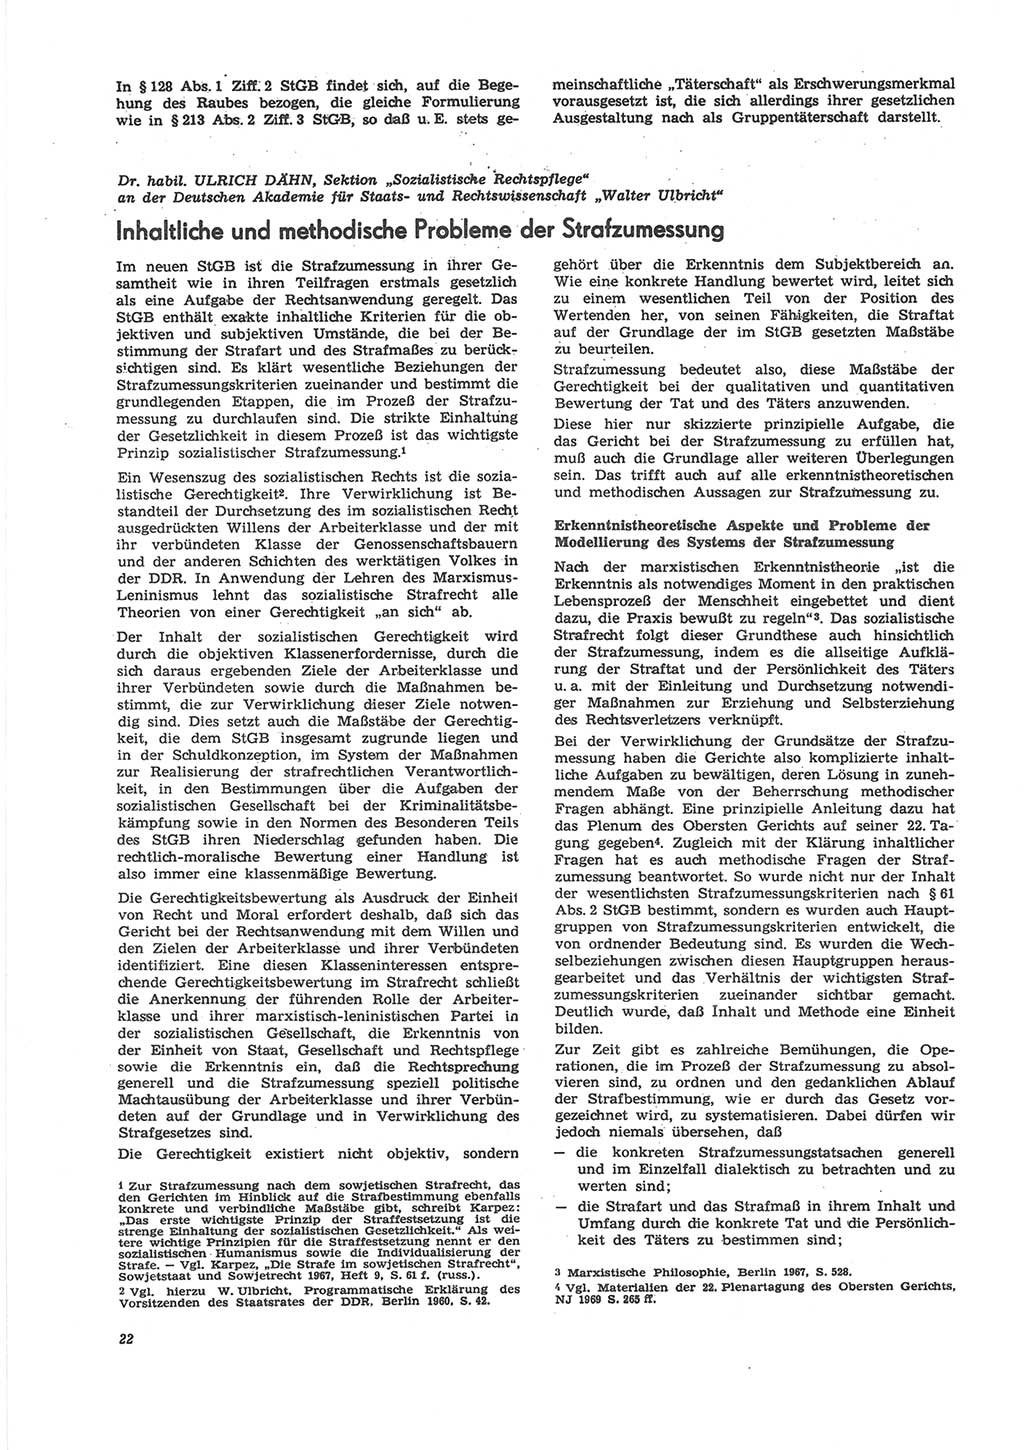 Neue Justiz (NJ), Zeitschrift für Recht und Rechtswissenschaft [Deutsche Demokratische Republik (DDR)], 24. Jahrgang 1970, Seite 22 (NJ DDR 1970, S. 22)